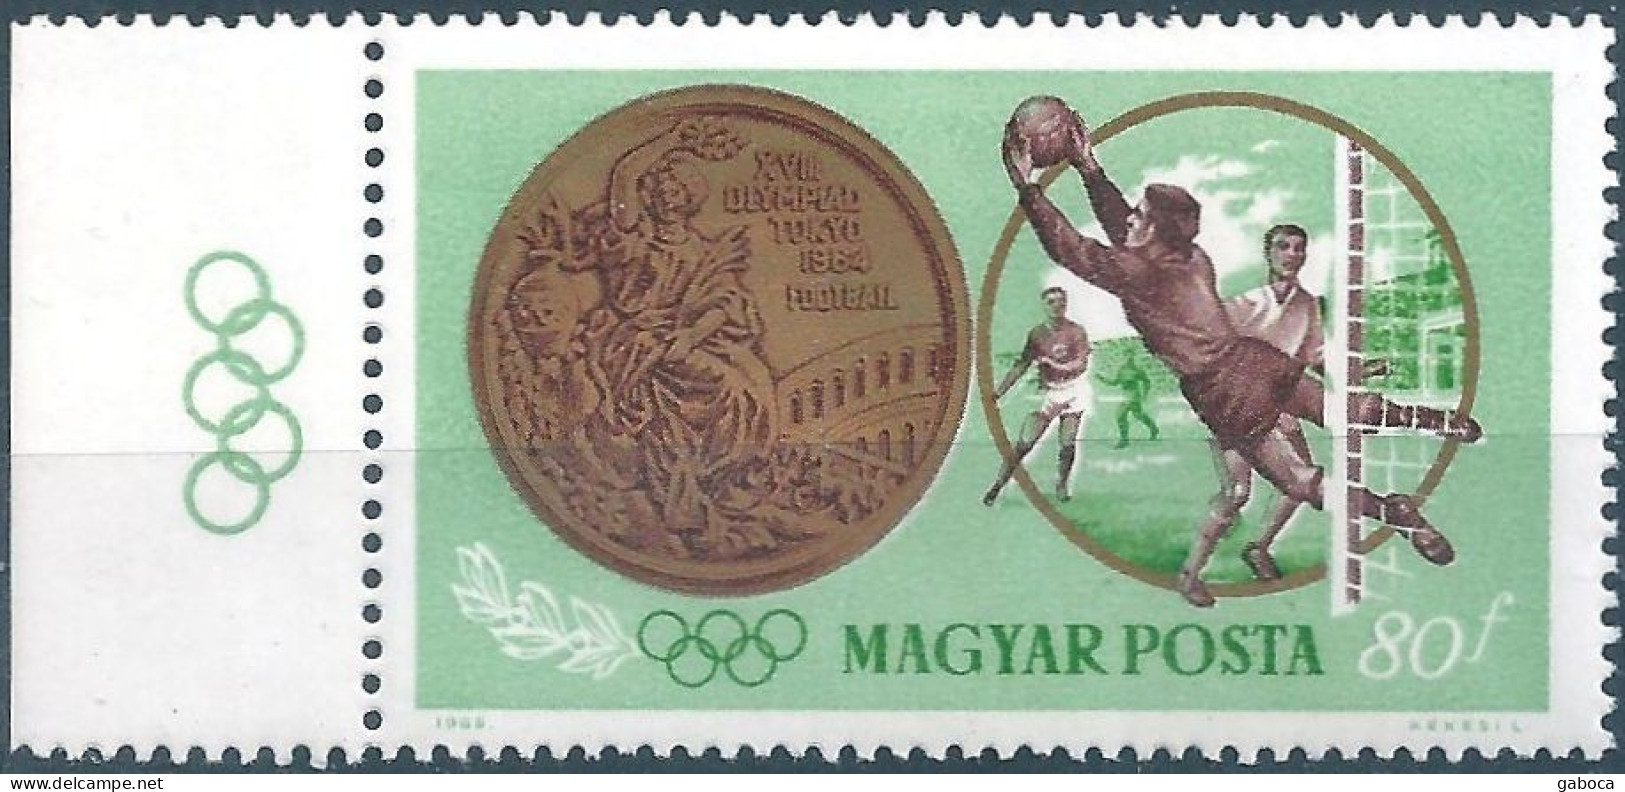 C5811 Hungary Olympics Tokyo Medalist Sport MNH RARE - Verano 1964: Tokio